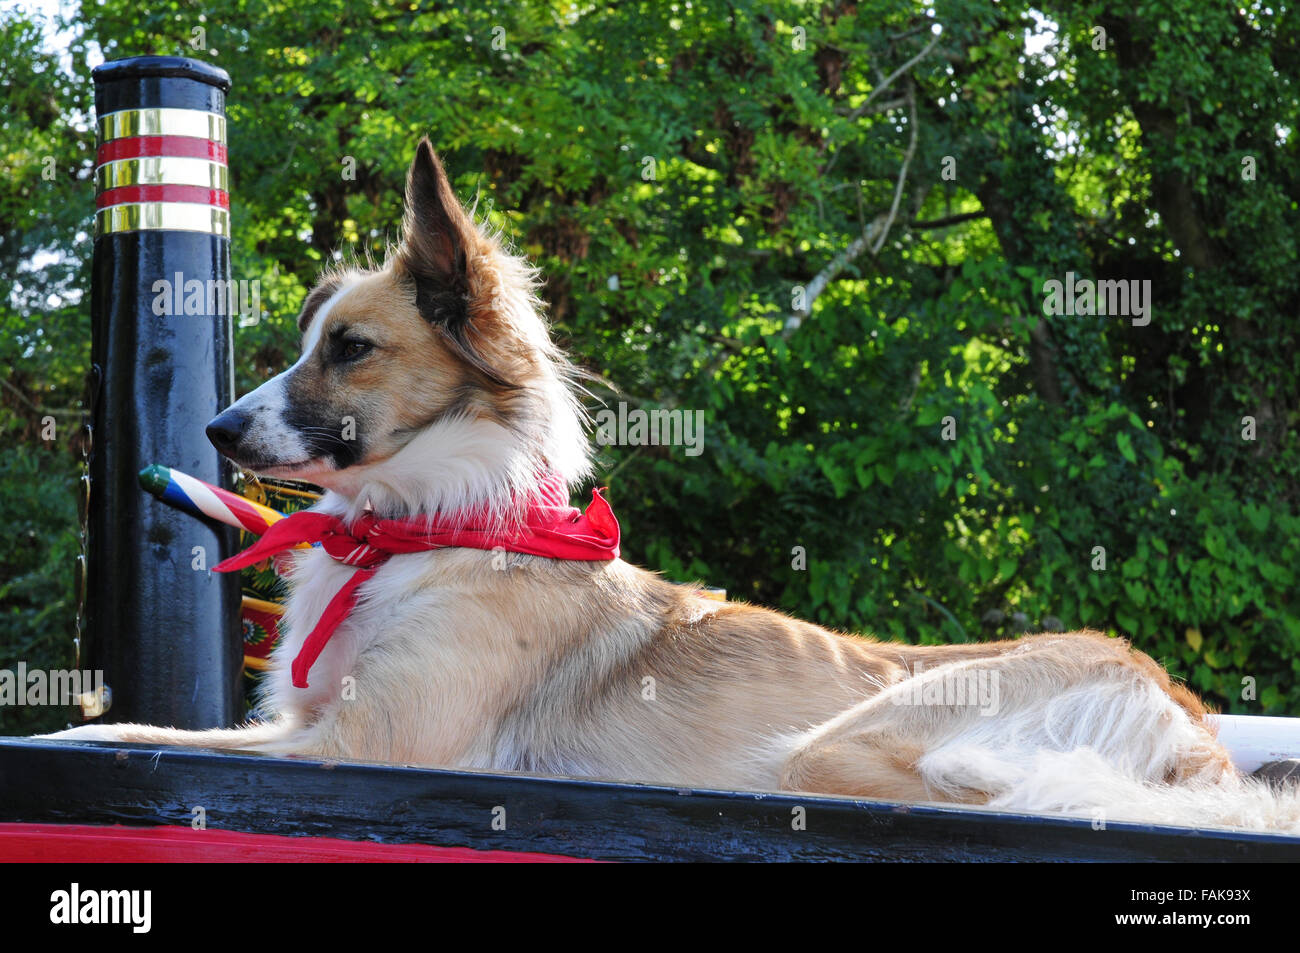 Hund trägt rote Halstuch oben auf einem Lastkahn.  Die Tivertonian, Canal Grande Western. Stockfoto